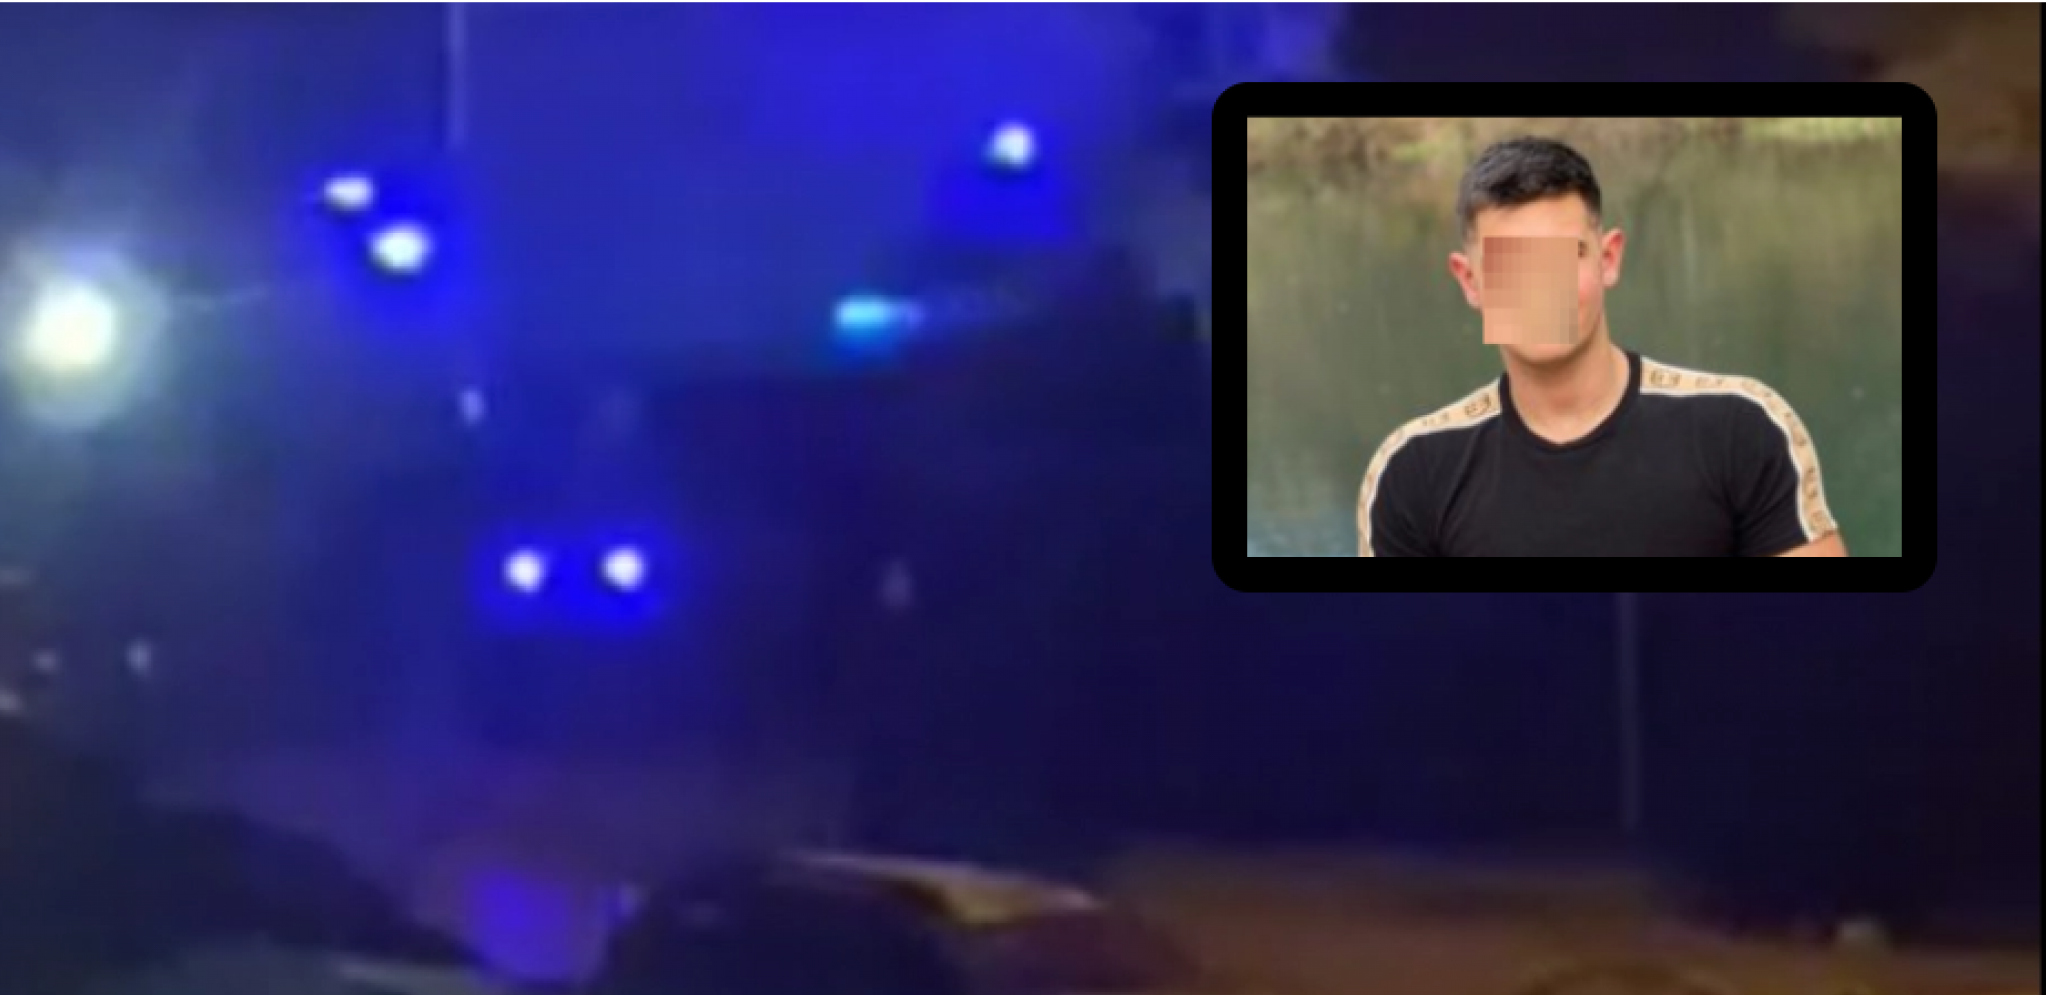 JOŠ POLICIJSKIH VOZILA PRISTIGLO U SELO DUBONA! Svi tragaju za ubicom, okolna sela nadleću helikopteri (VIDEO)